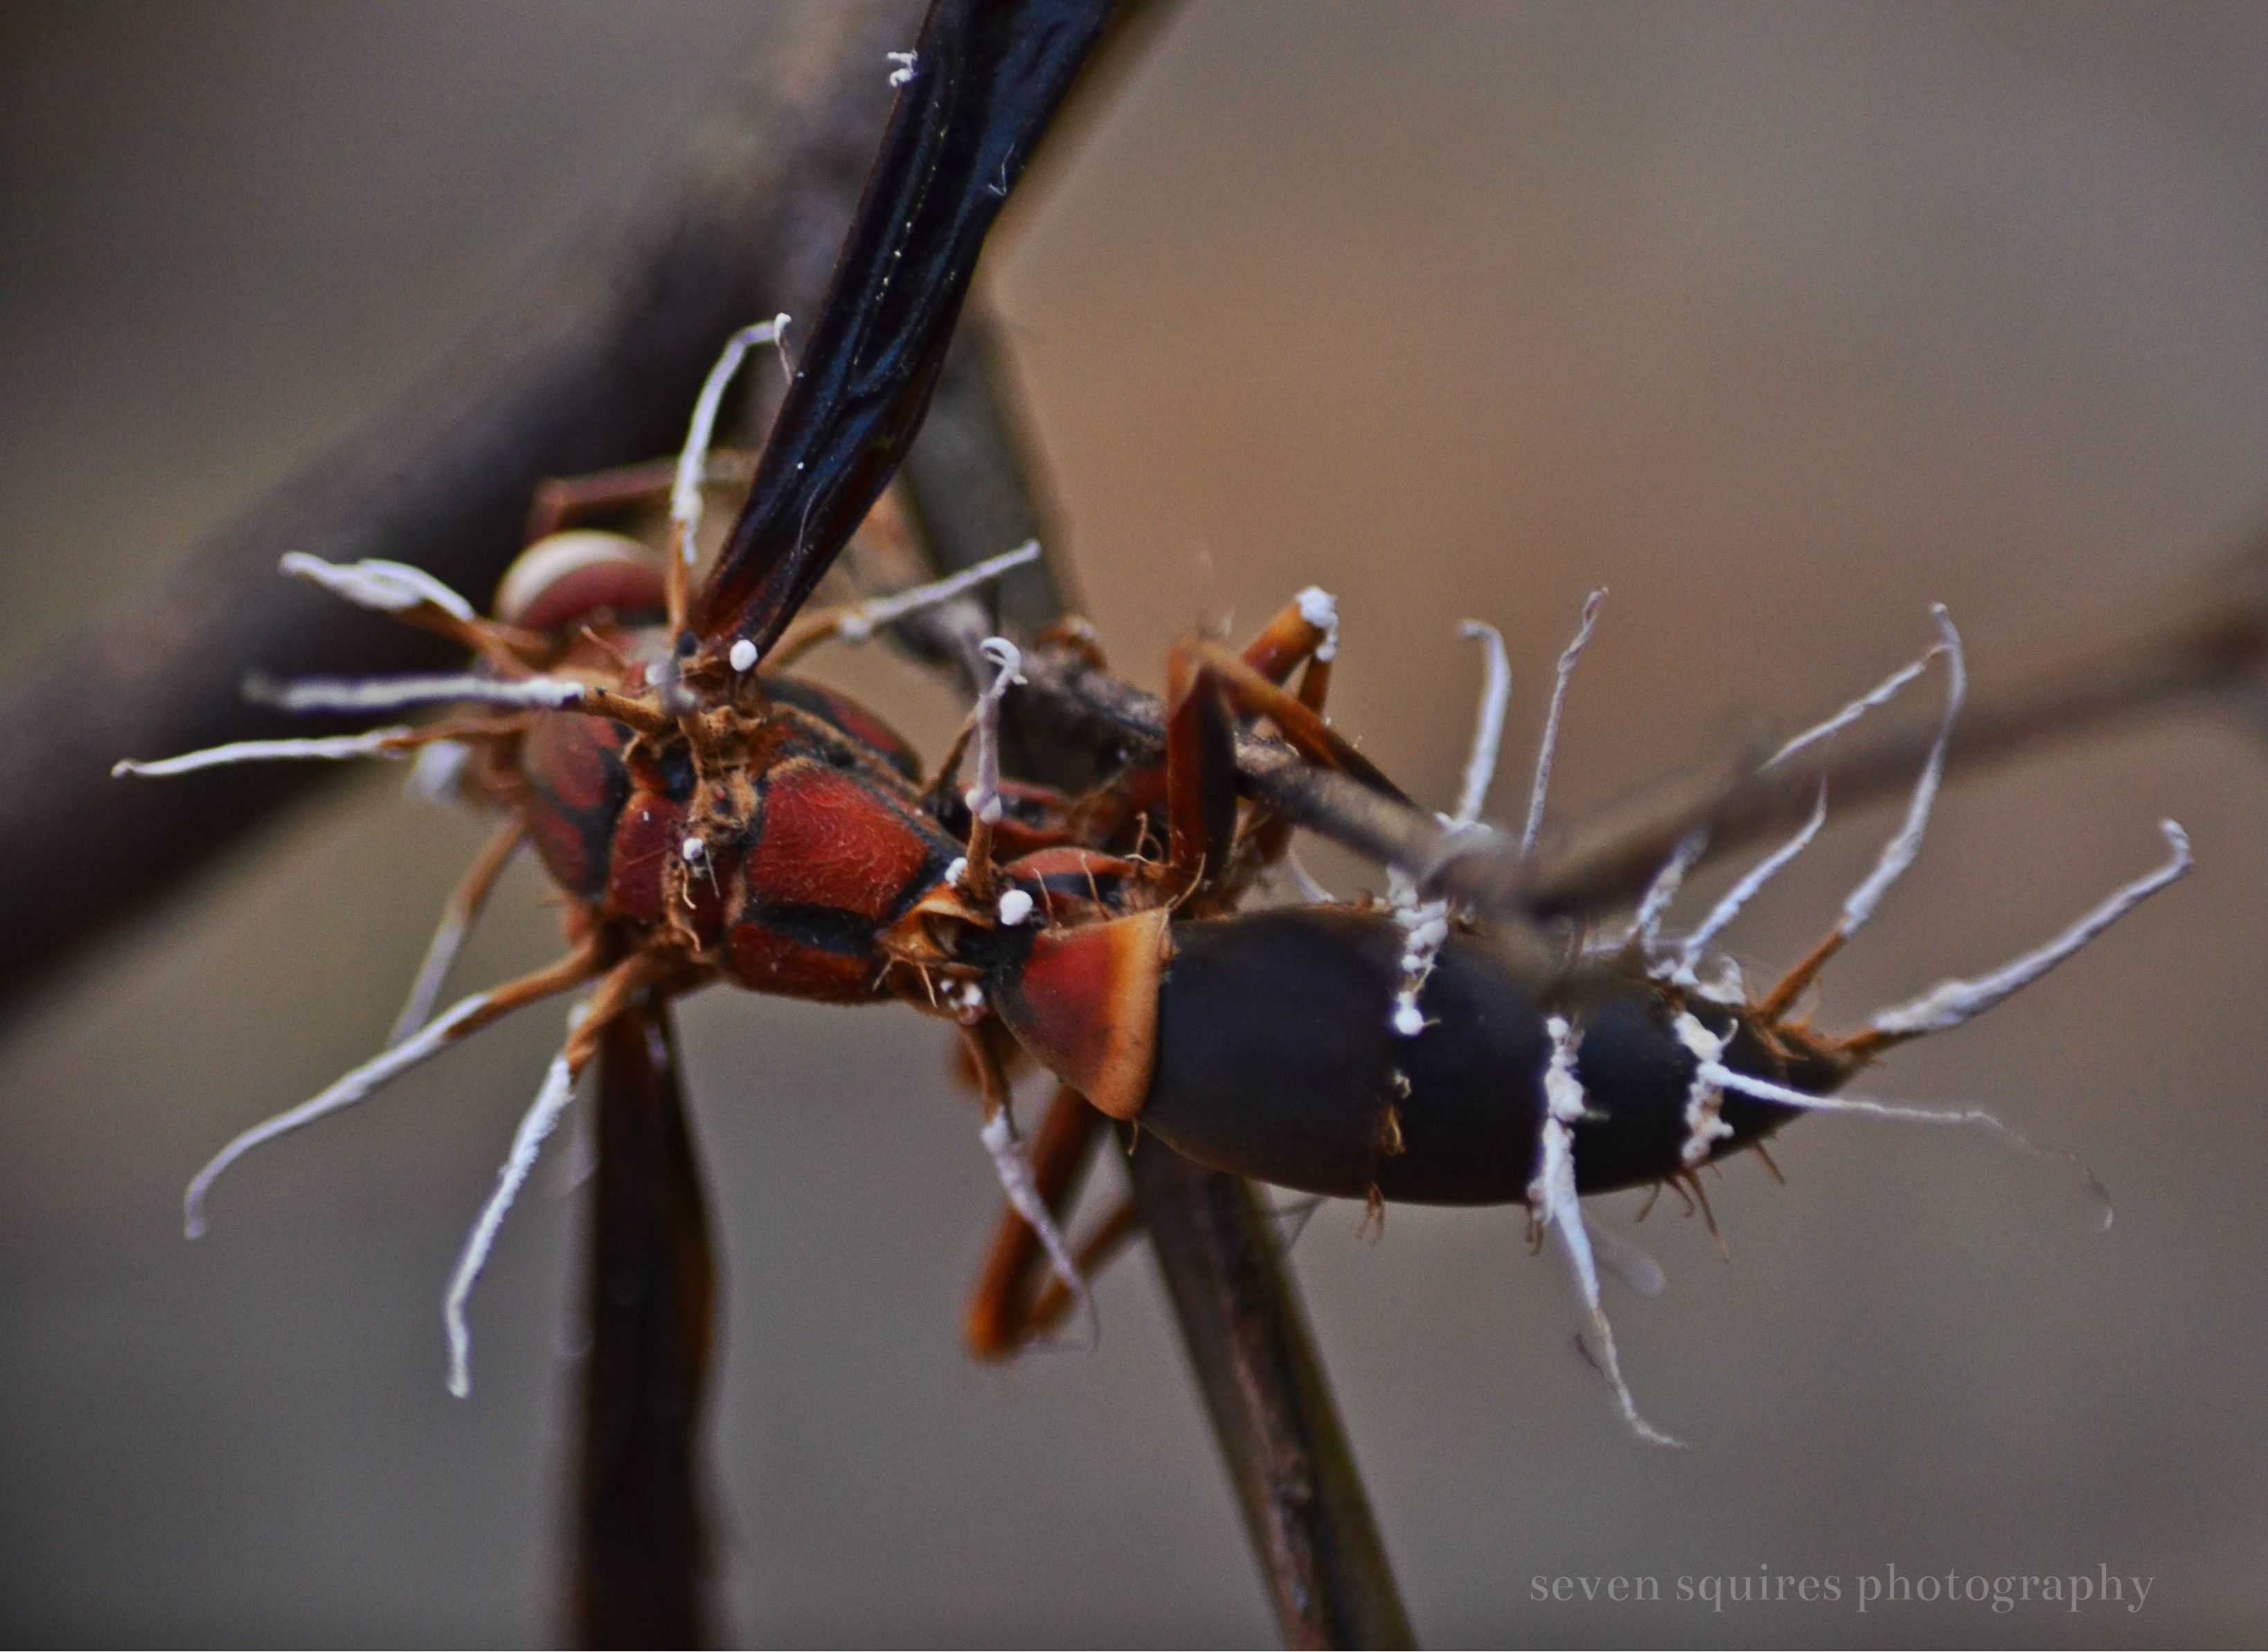 Как грибы-паразиты превращают муравьев в зомби? - hi-news.ru